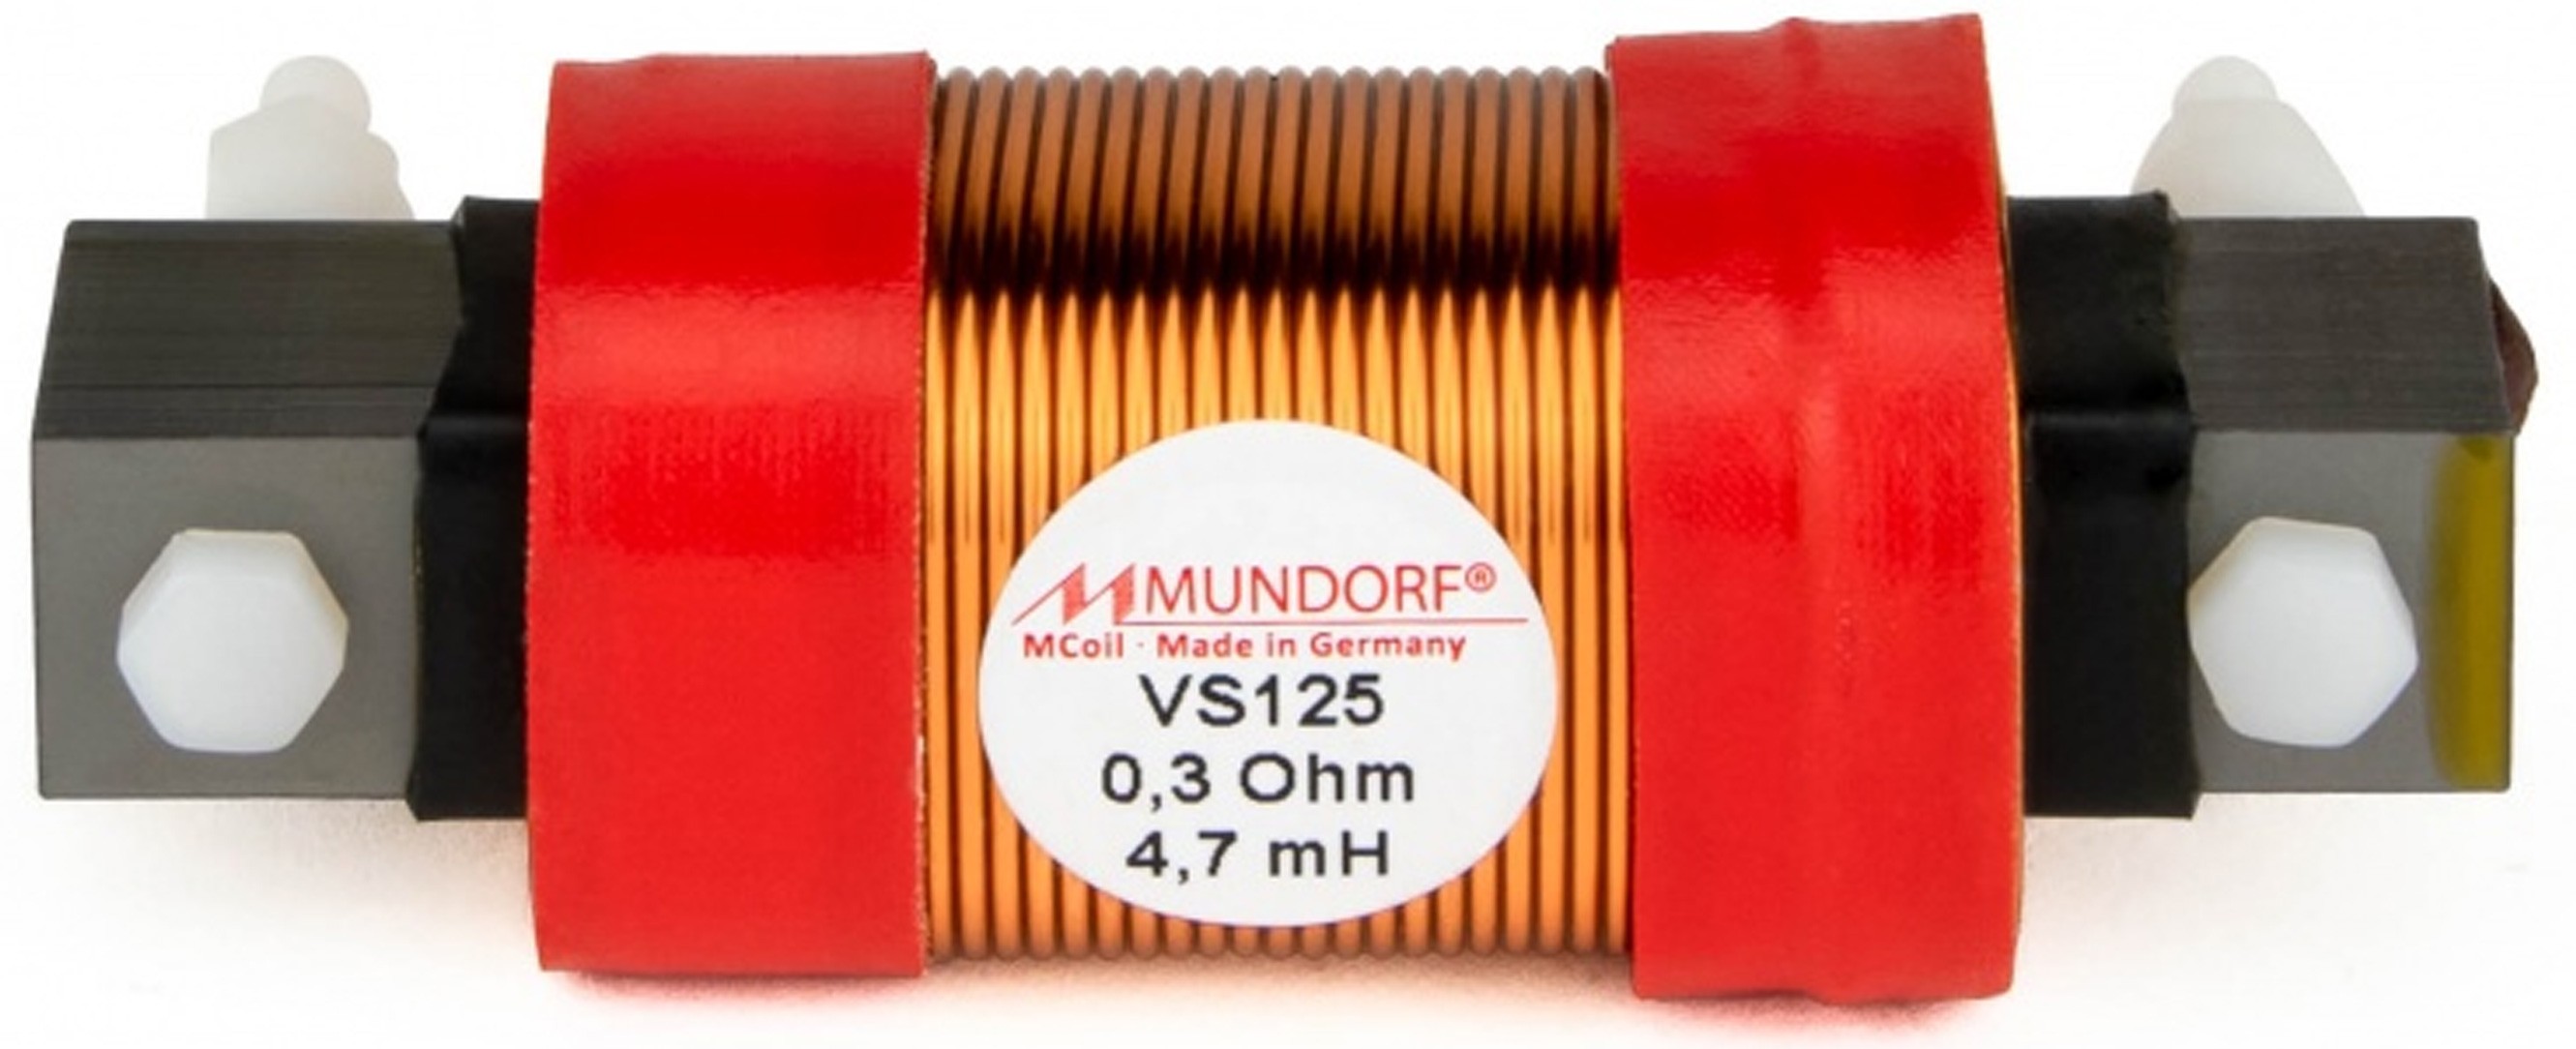 MUNDORF VS125-8.2 MCOIL ICORE Copper Coil Feron Core 8.2mH